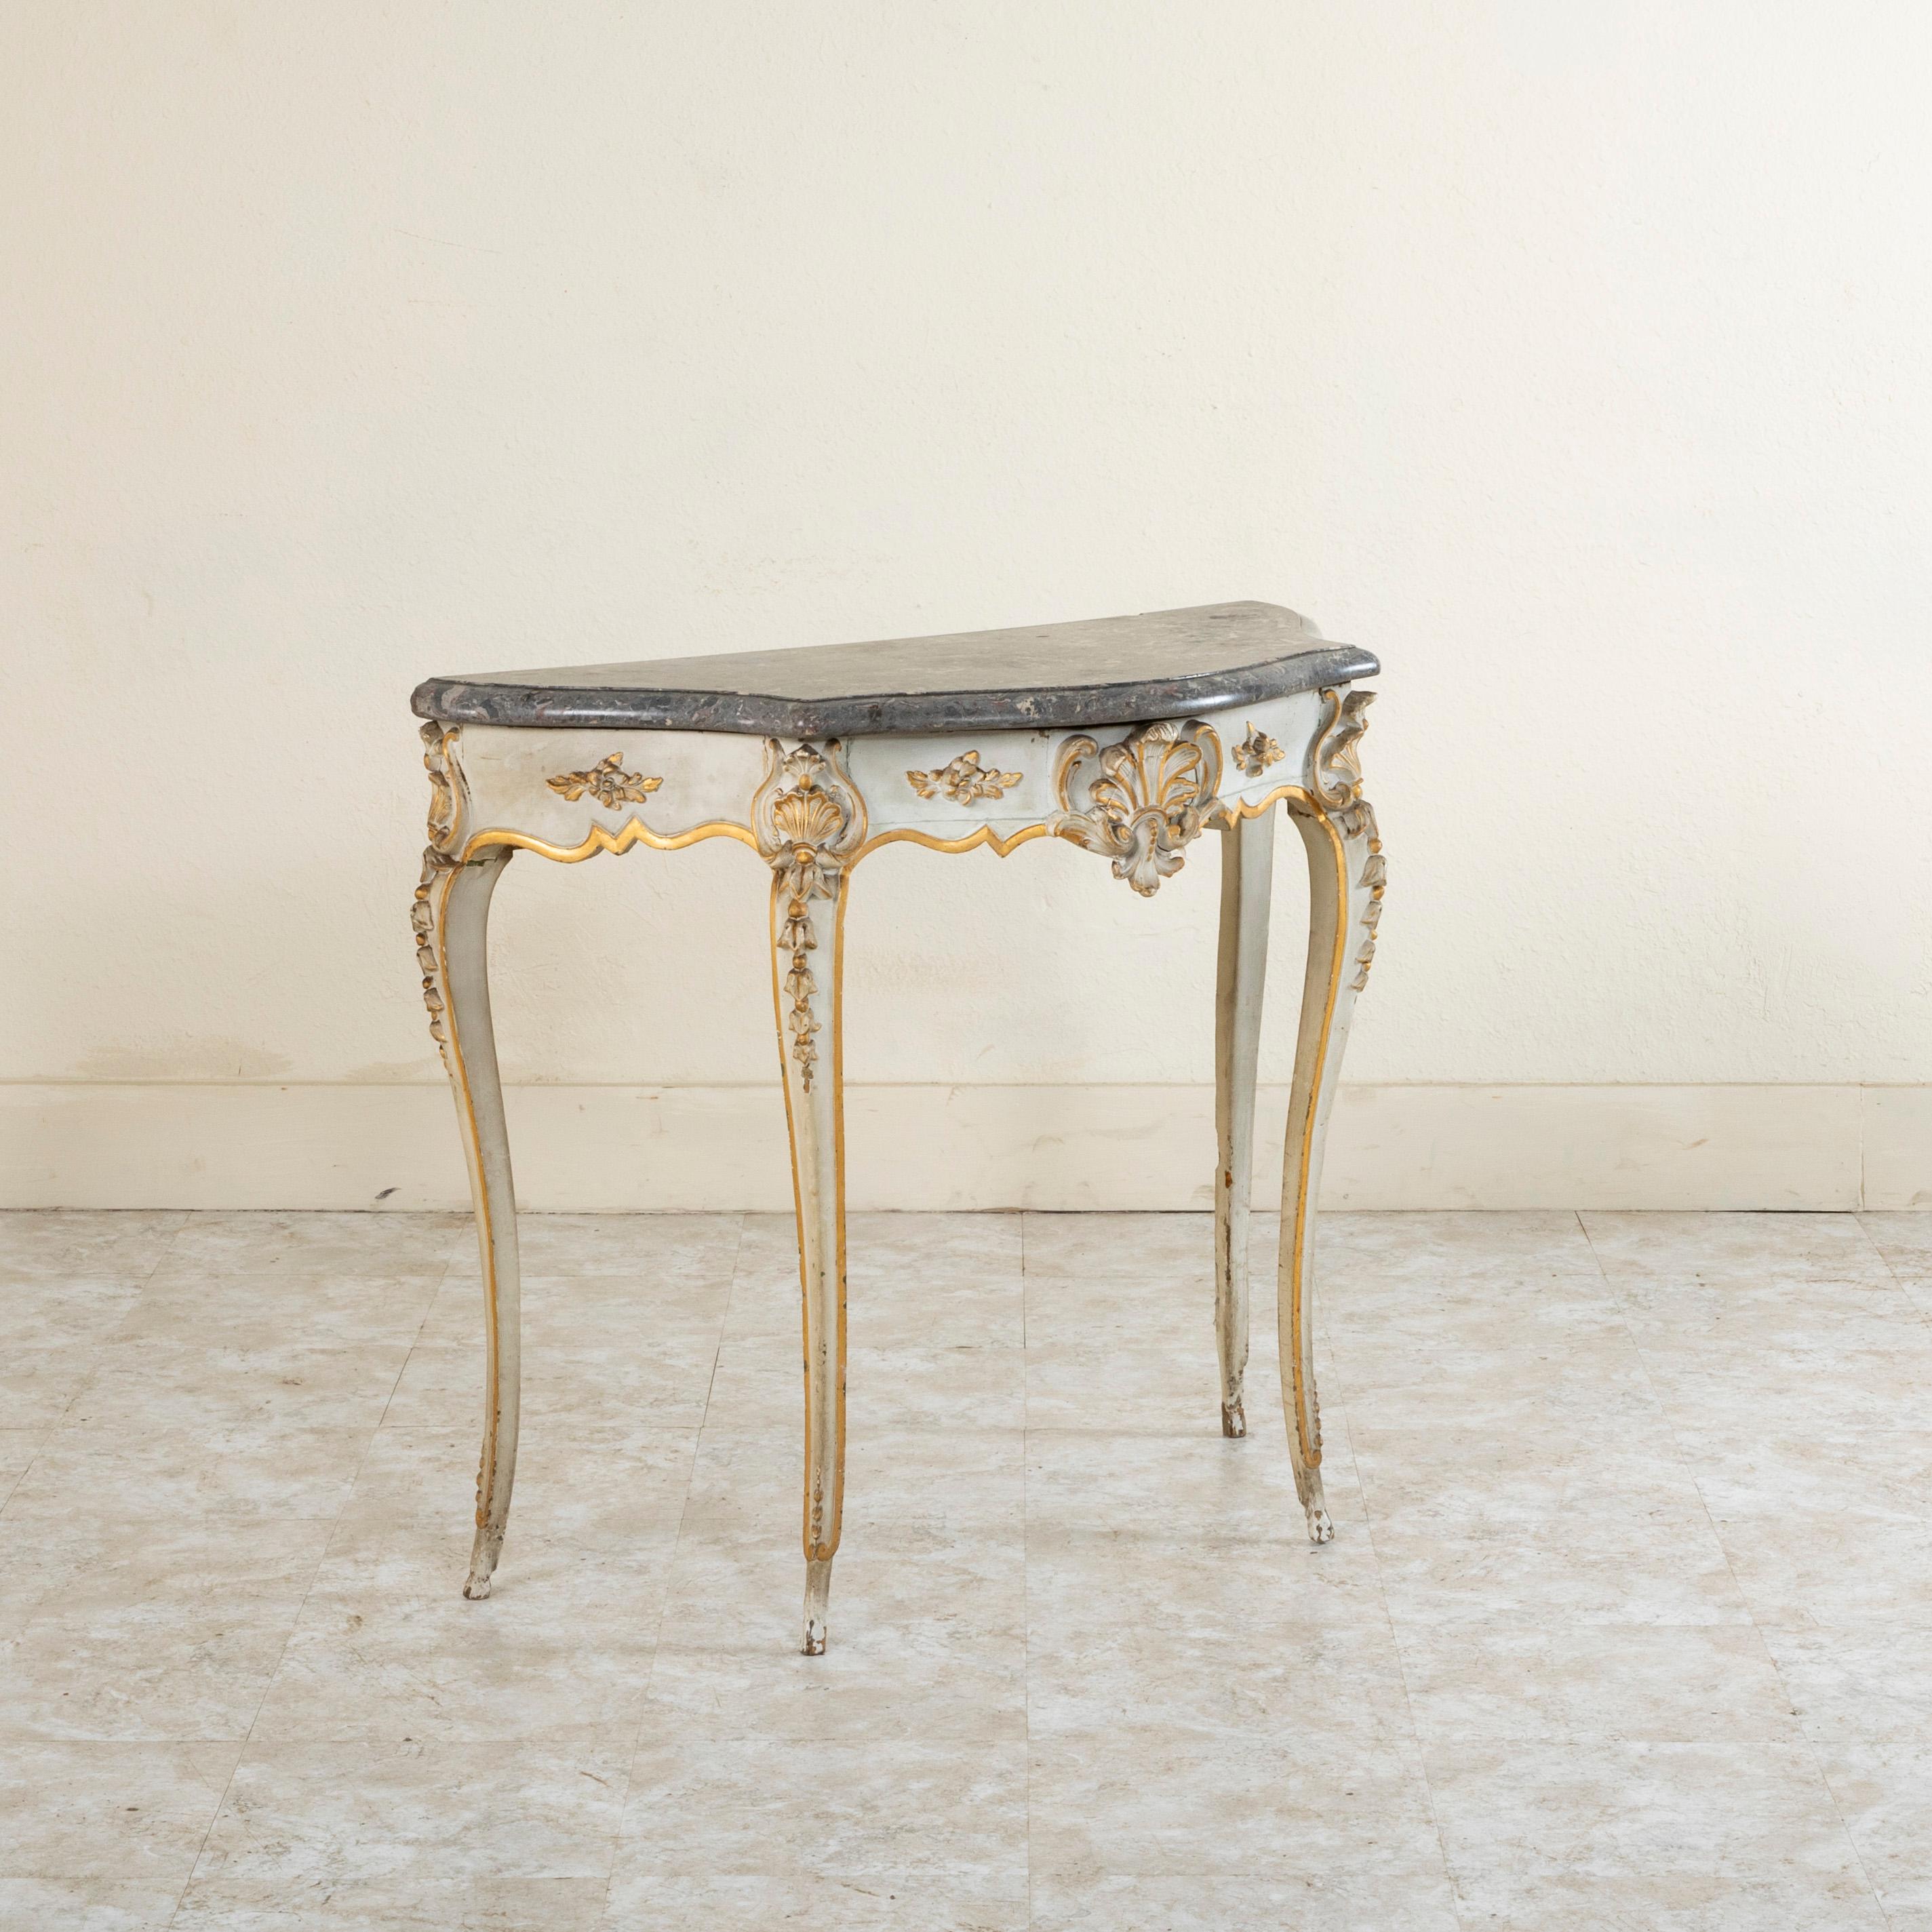 Diese Mitte des neunzehnten Jahrhunderts Französisch Louis XV Stil gemalt Konsole Tisch verfügt über eine abgeschrägte Marmorplatte. Diese Konsole ist in einem grauen Weiß mit goldenen Akzenten lackiert und hat eine handgeschnitzte Muschel in der